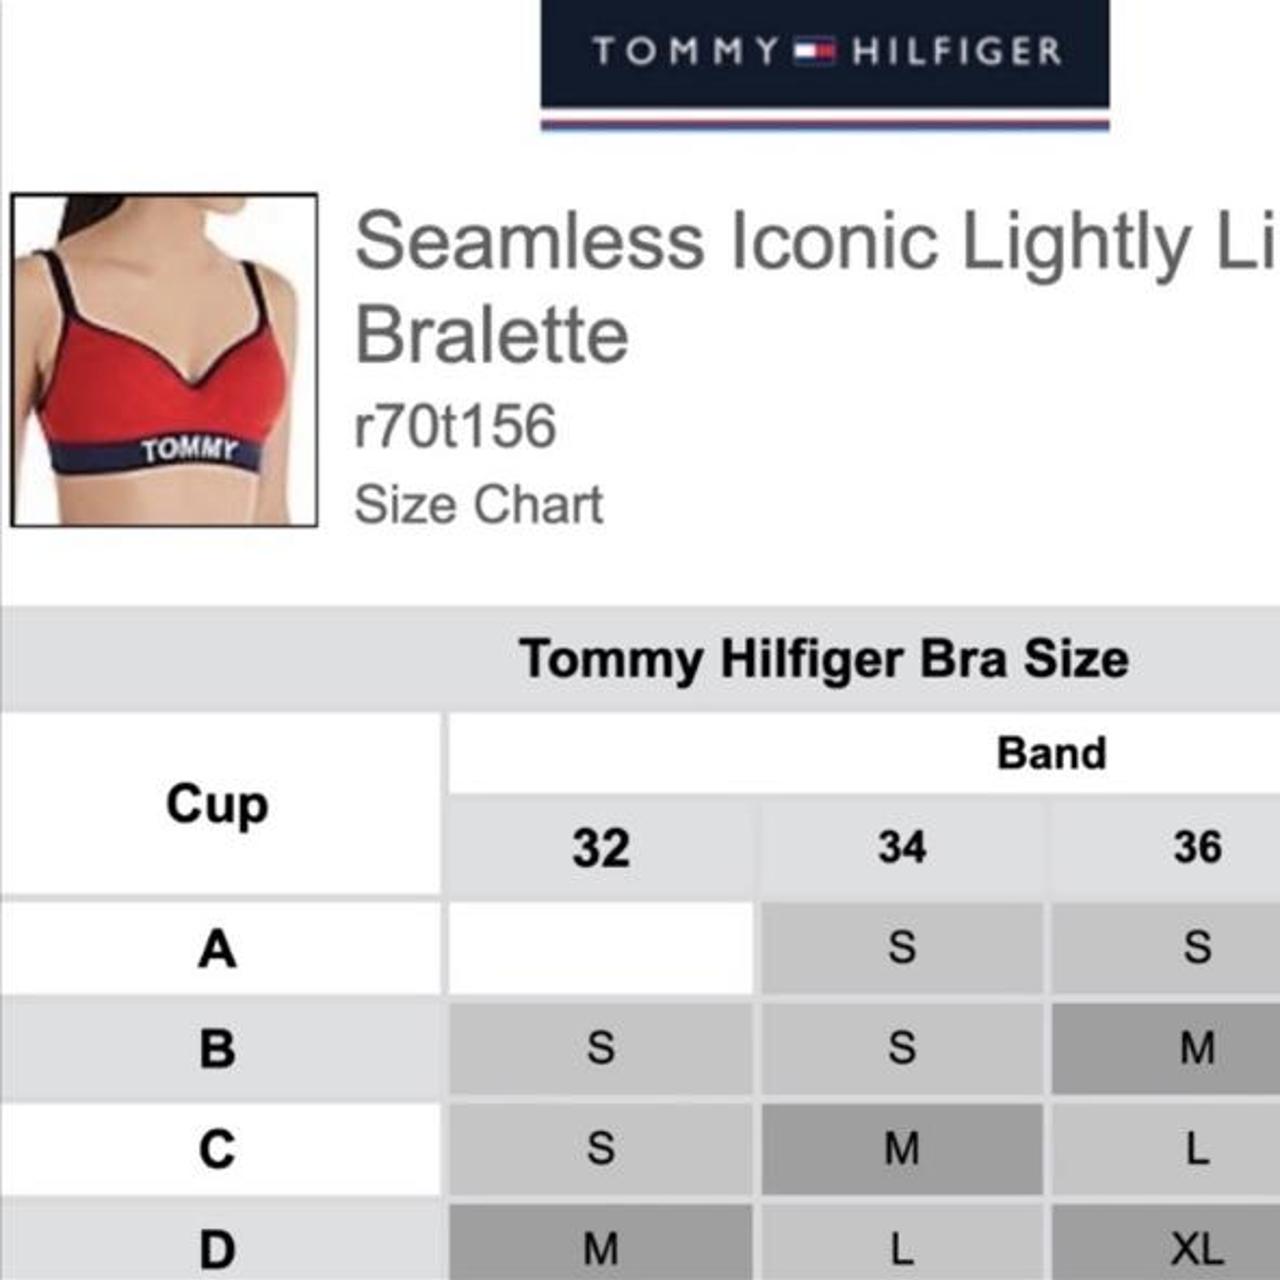 Tommy Hilfiger Seamless Logo Padded Bra Excellent - Depop